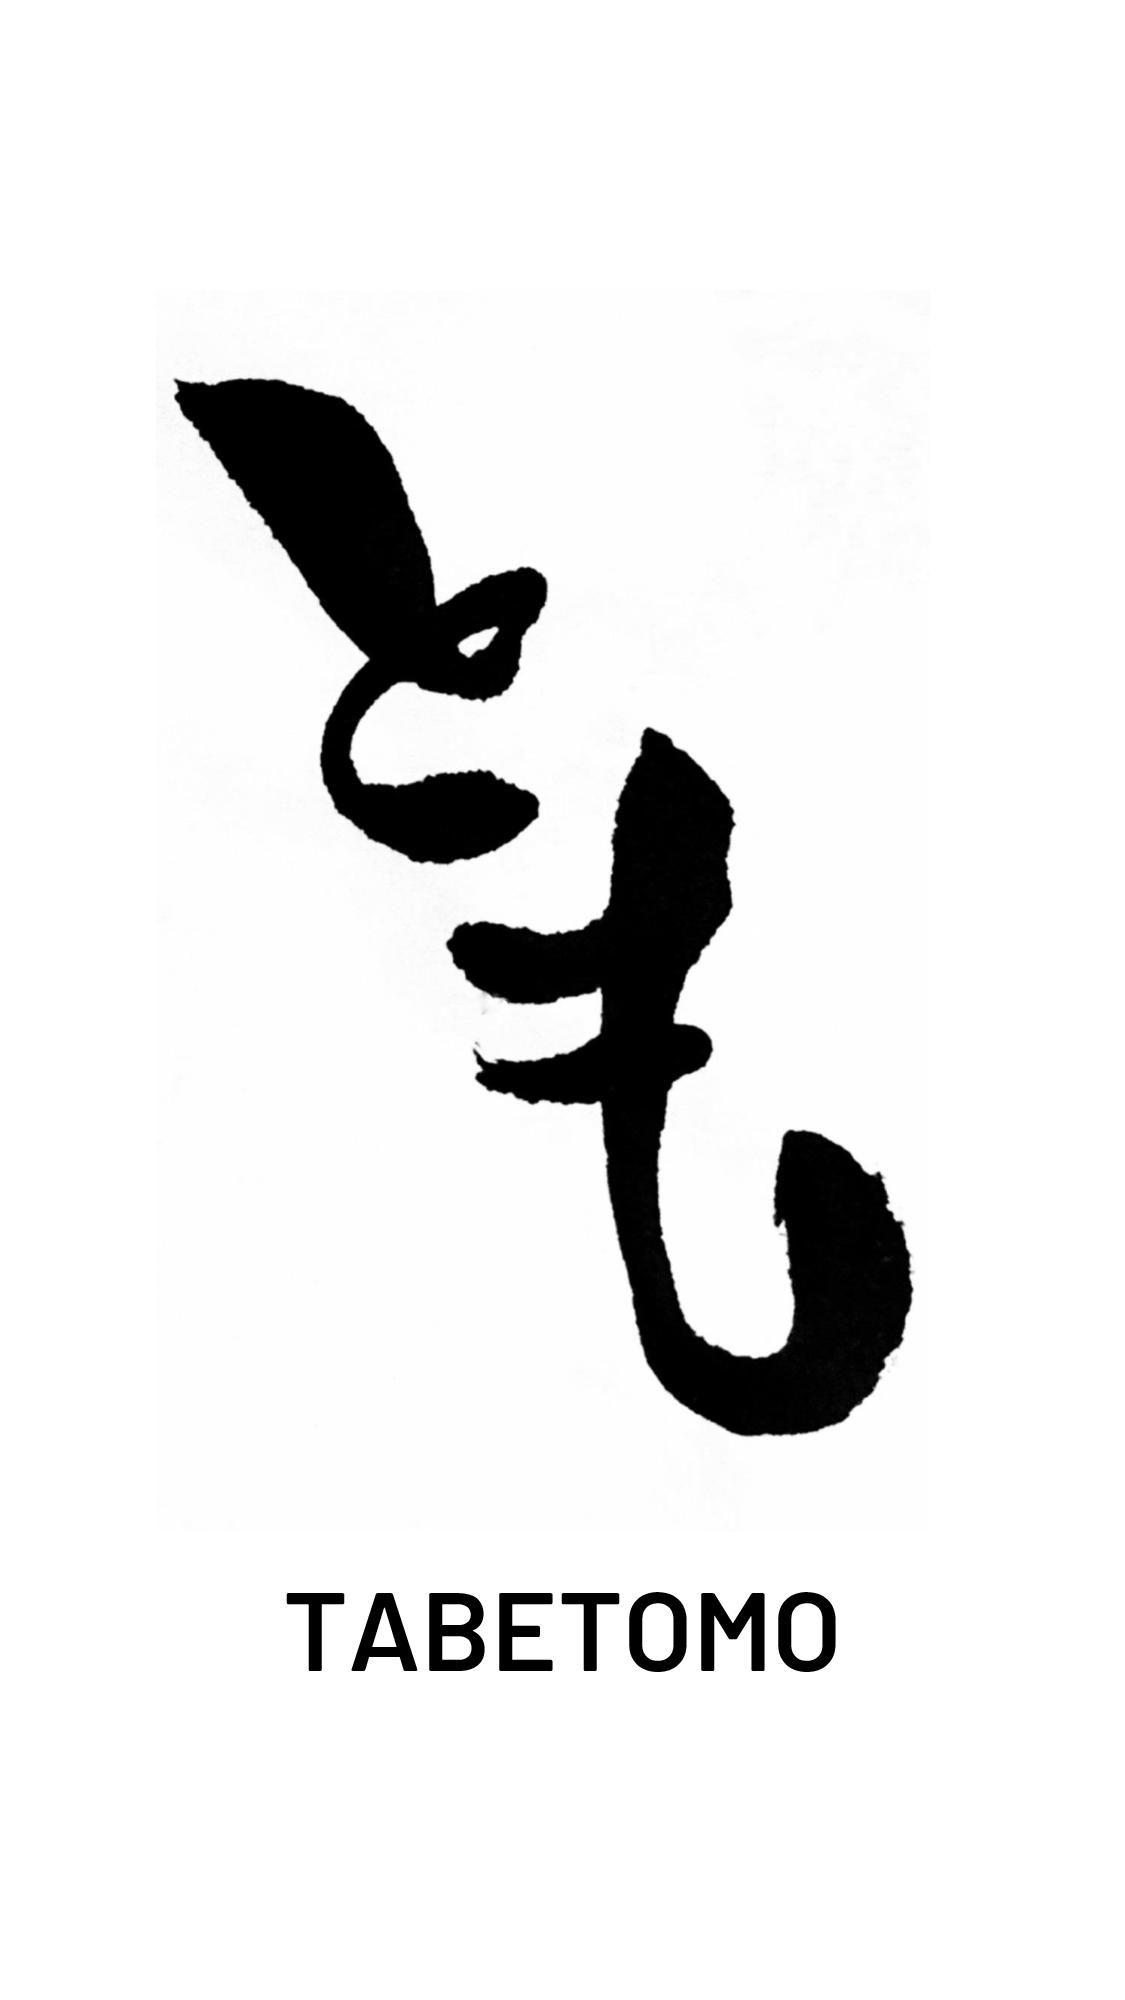 TABE Logo - TabeTomo